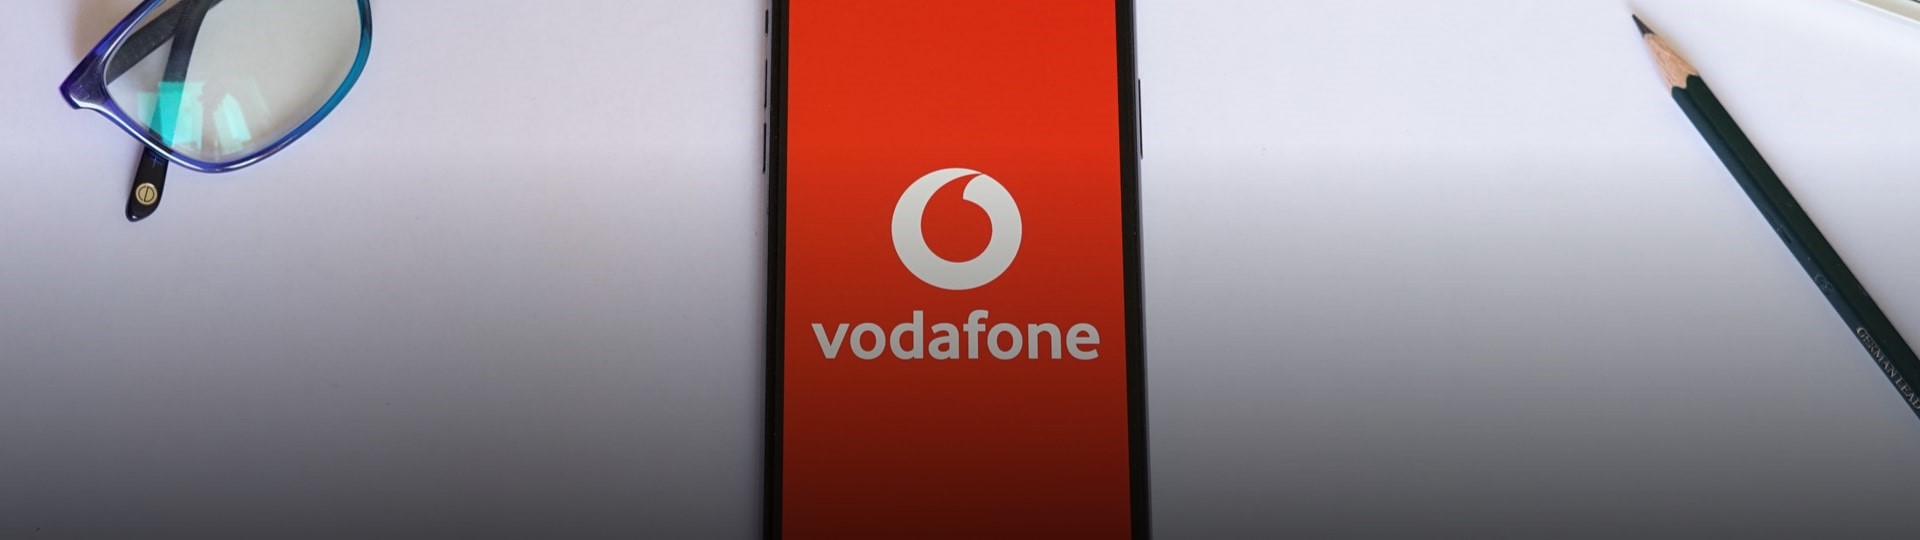 Vodafone jedná o strategické spolupráci s ČEZ